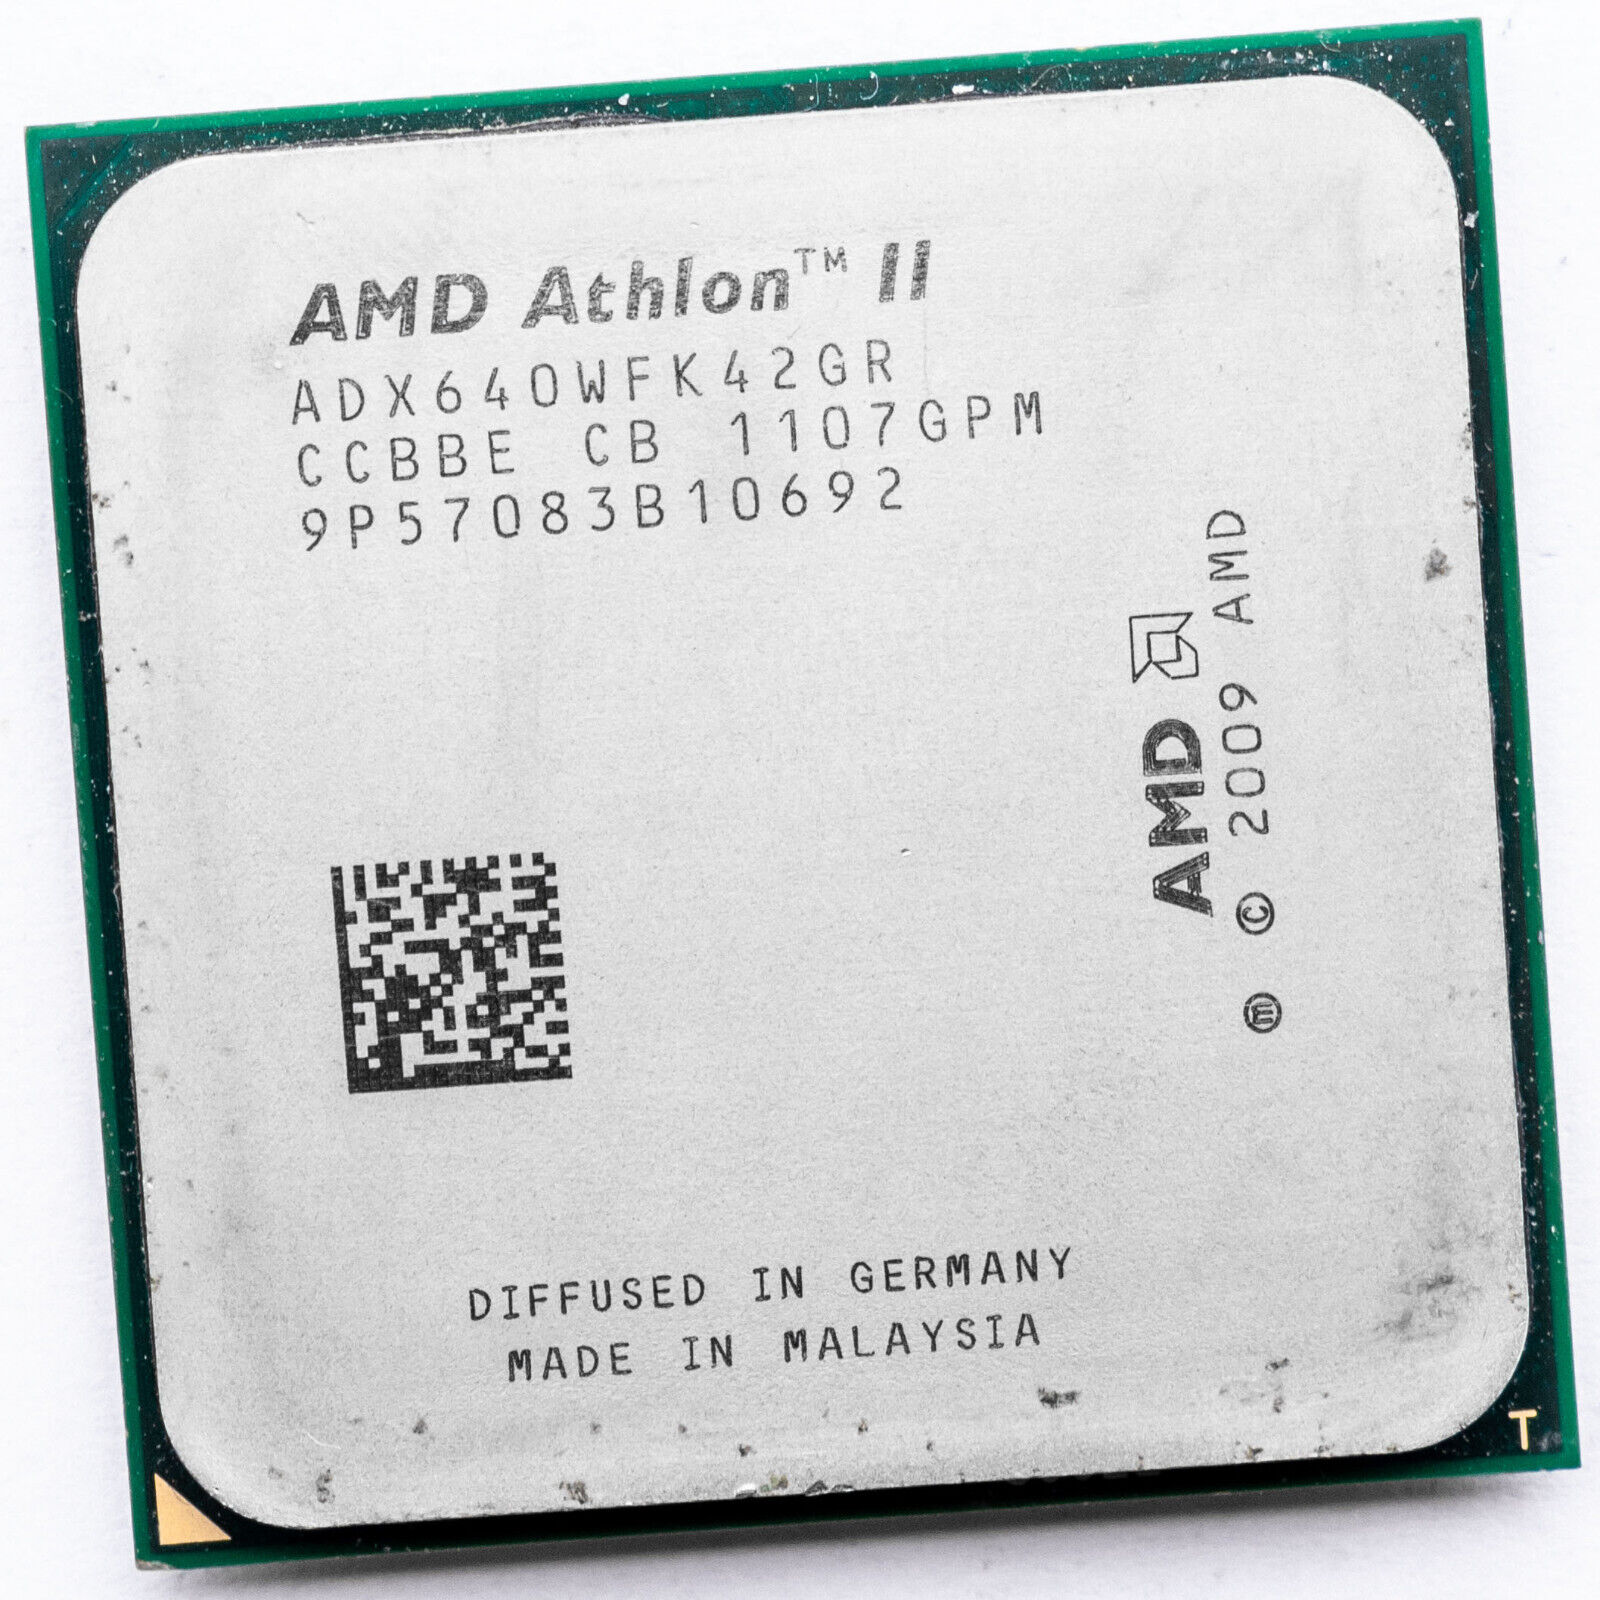 AMD Athlon II X4 640 ADX640WFK42GR AM3 3GHz Quad Core Unlockable to Phenom II X6